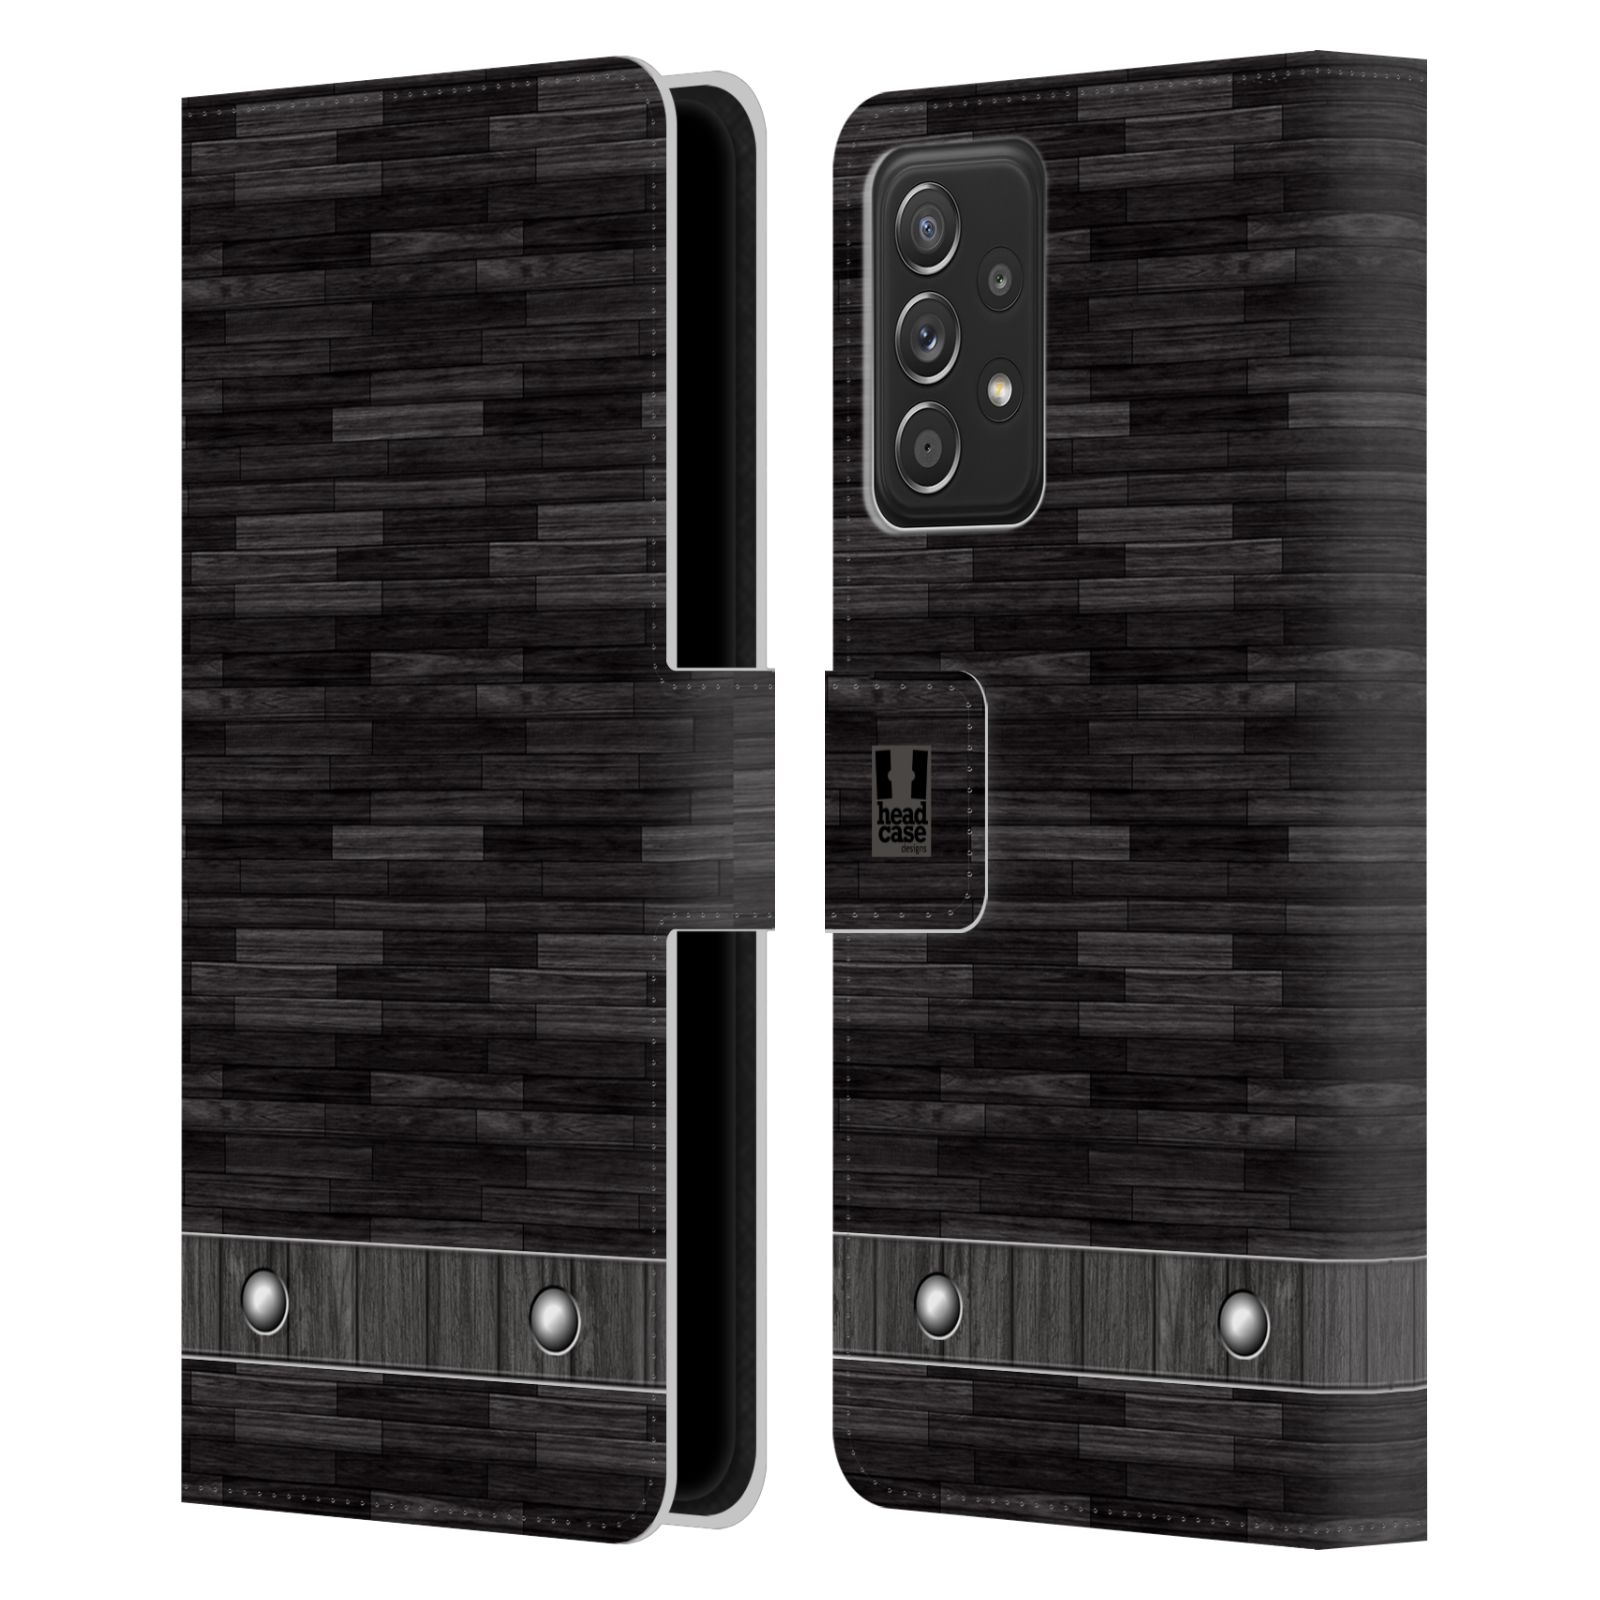 Pouzdro HEAD CASE na mobil Samsung Galaxy A52 / A52 5G / A52s 5G stavební textury dřevo černá barva